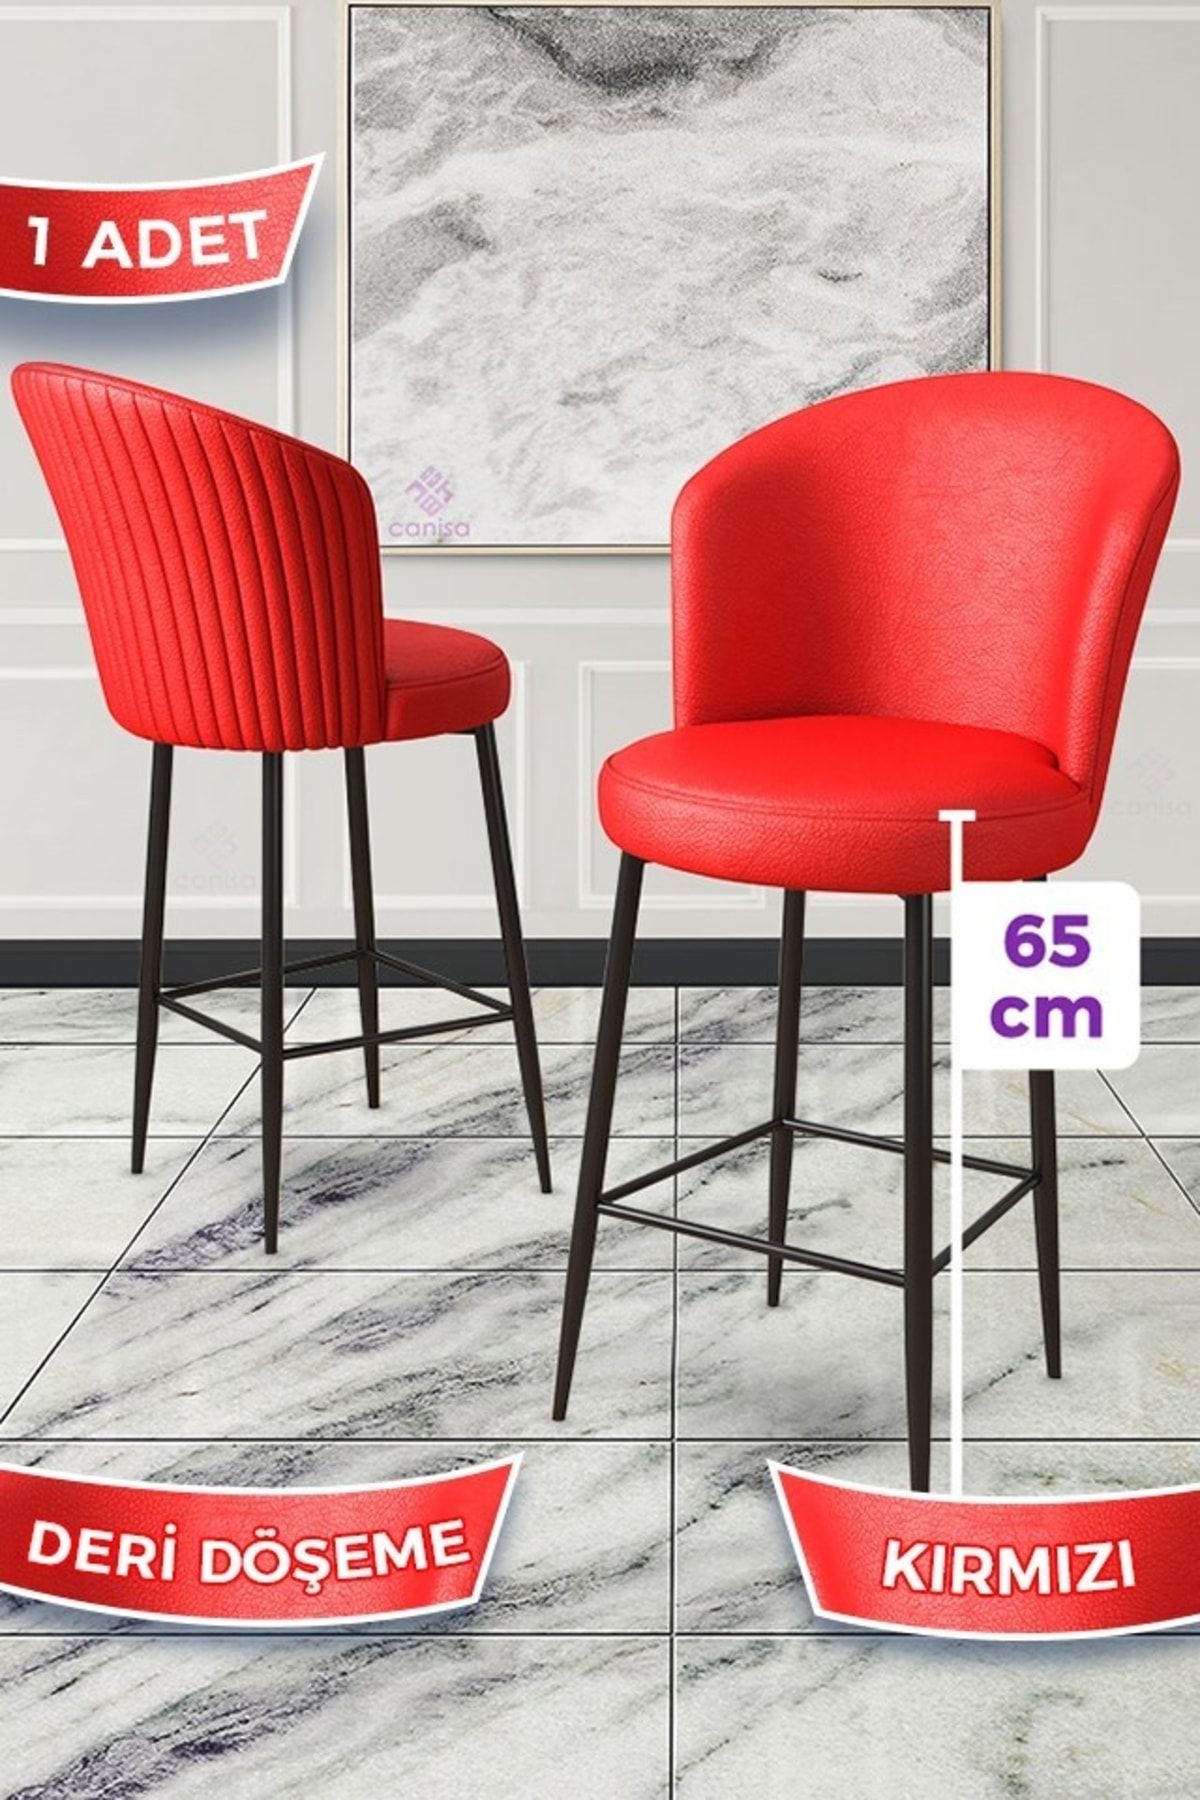 Canisa Concept Rika Serisi 1 Adet Kırmızı 65 Cm Deri Bar Sandalyesi Siyah Metal Ayaklı Ada Mutfak Bar Sandalyesi